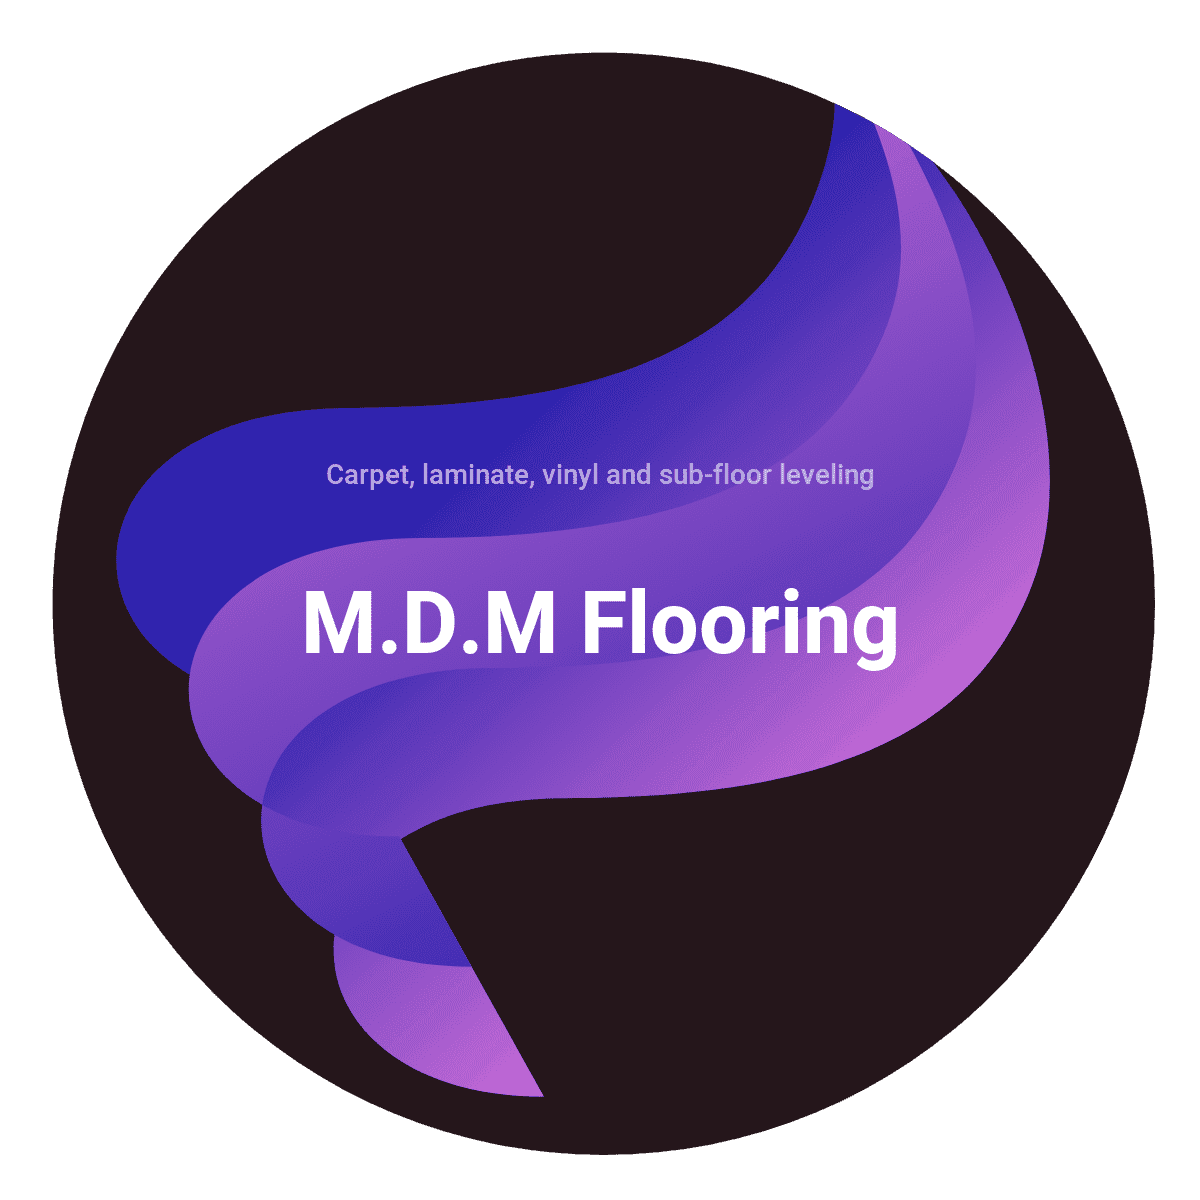 M.D.M Flooring